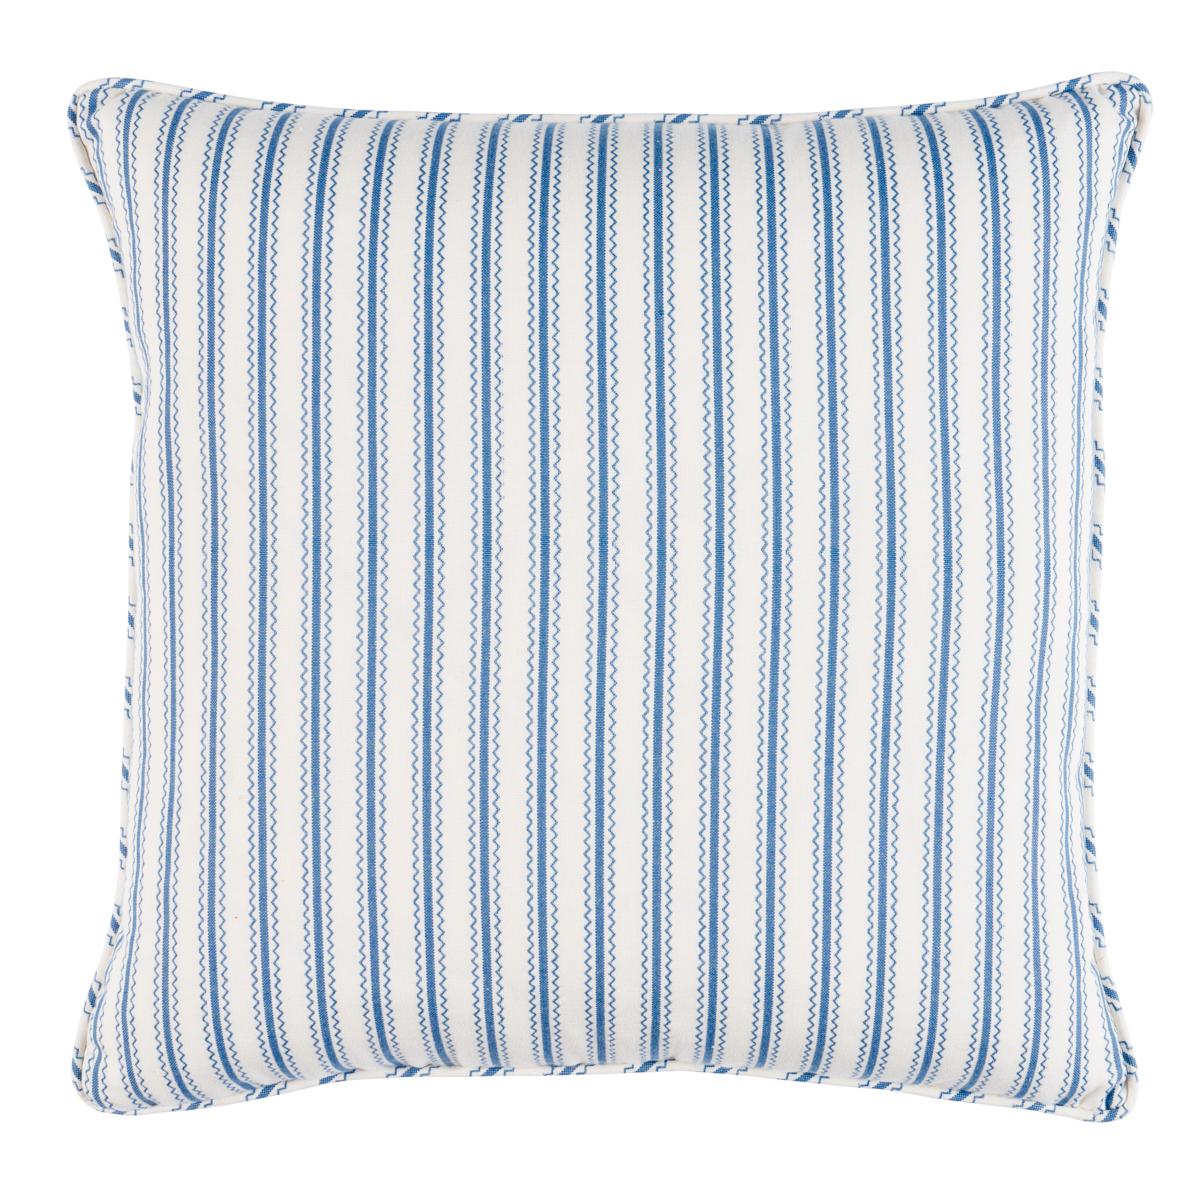 Birdie Ticking Stripe Pillow in Indigo 22 x 22"